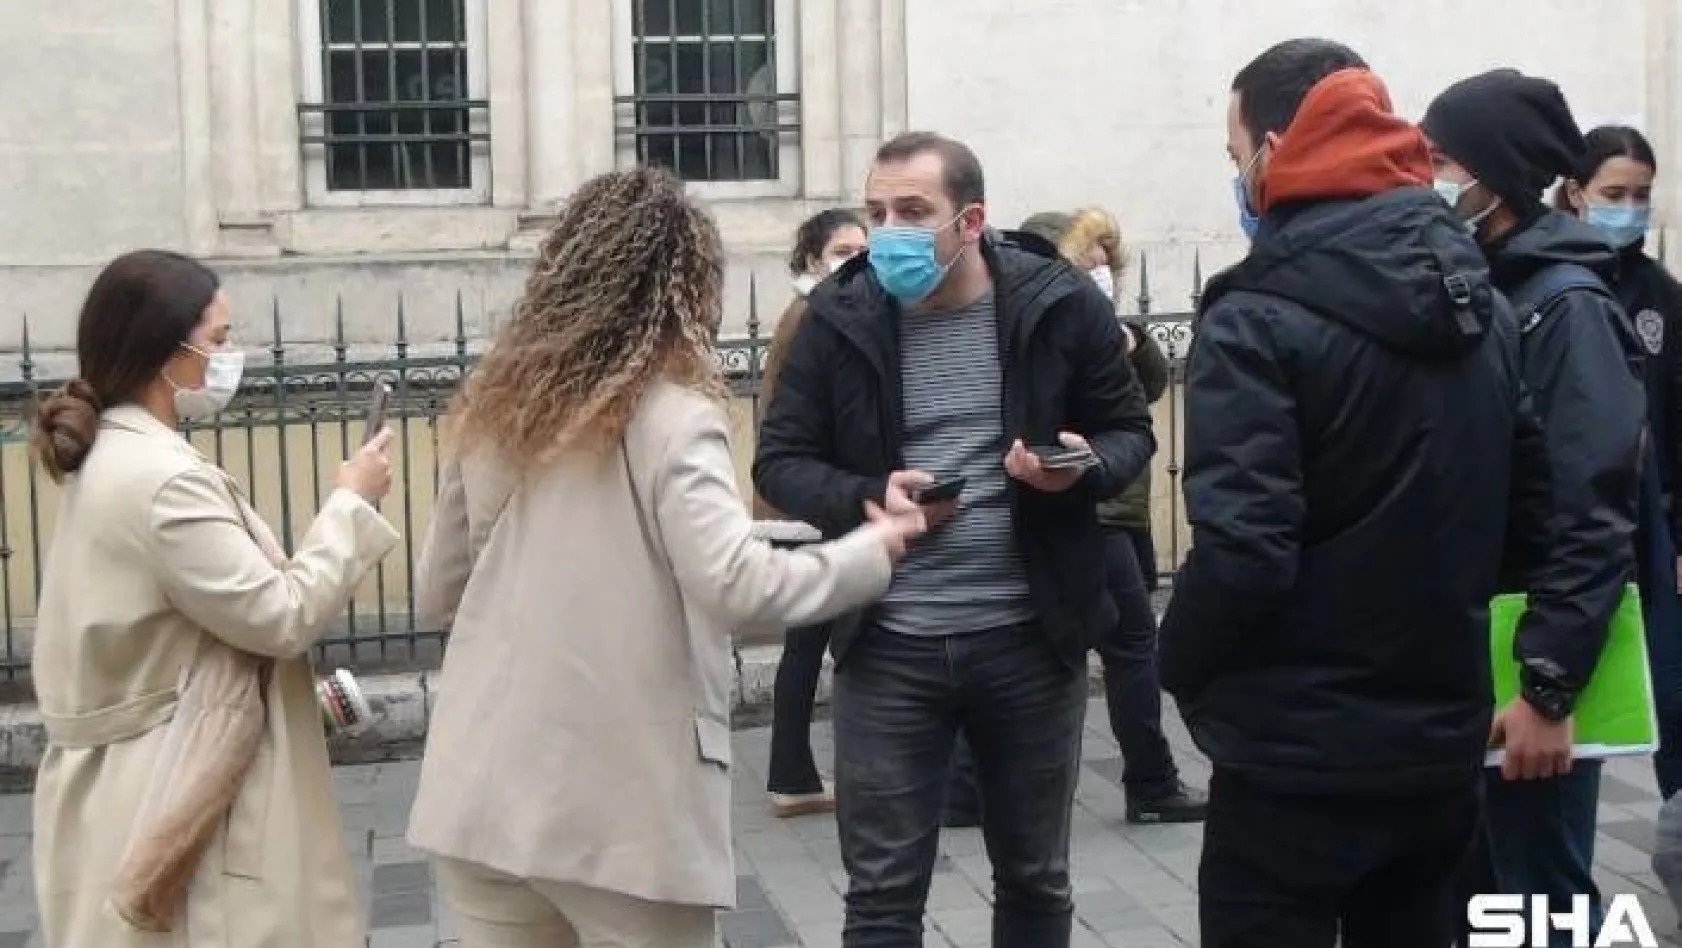 (Özel) Polise 'Kapa çeneni' diyen kadın turistler gözaltına alındı